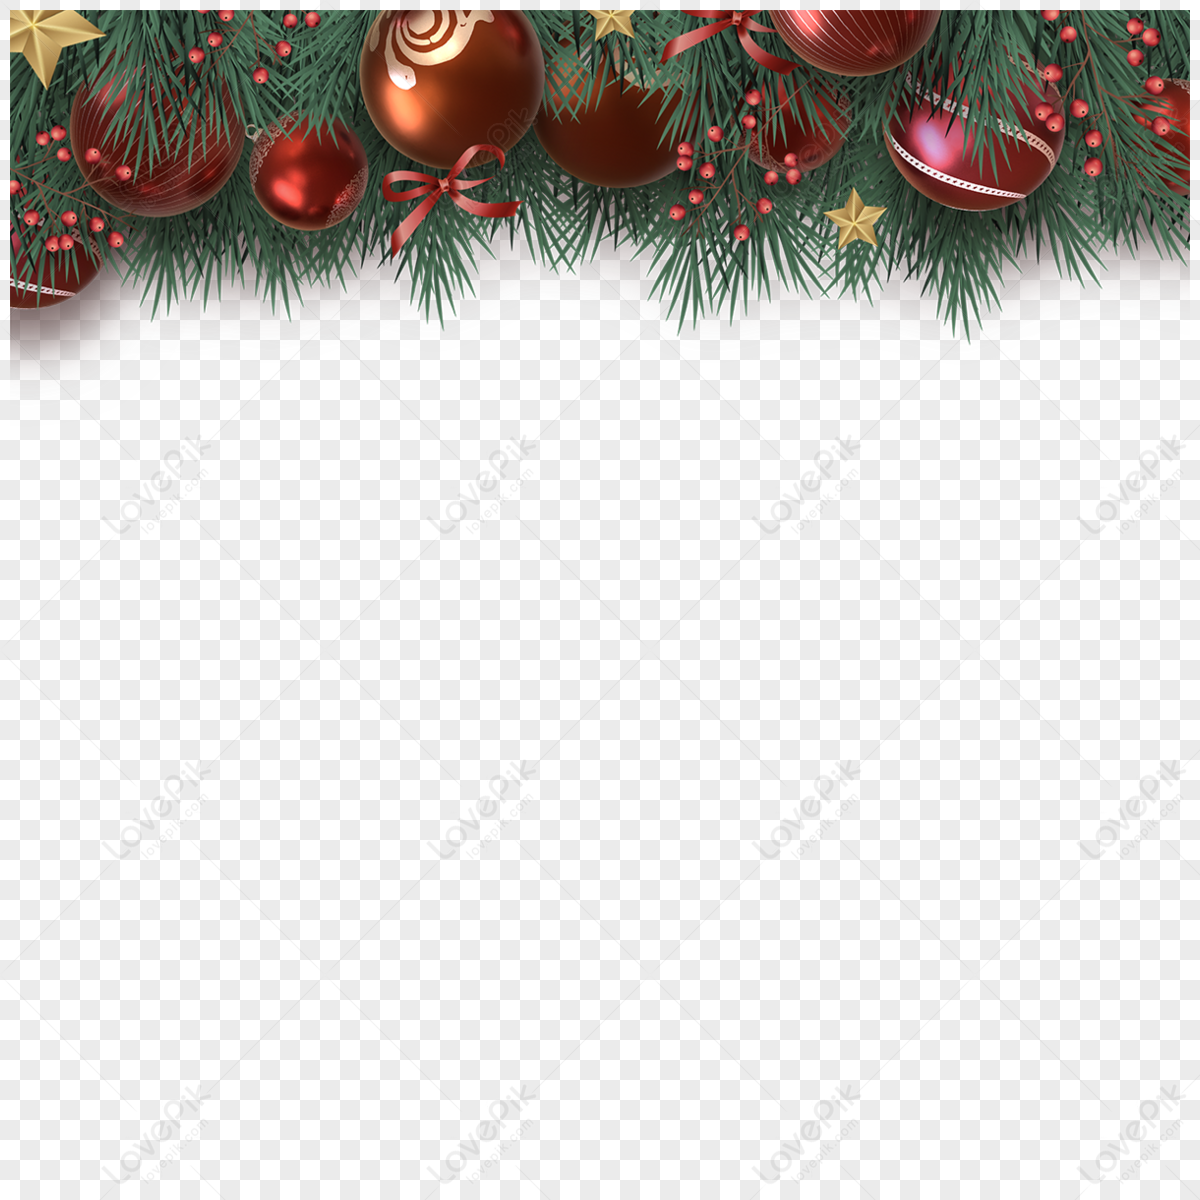 Bow Christmas fruit leaves Christmas decoration border, Christmas fruit,  border,  bow png image